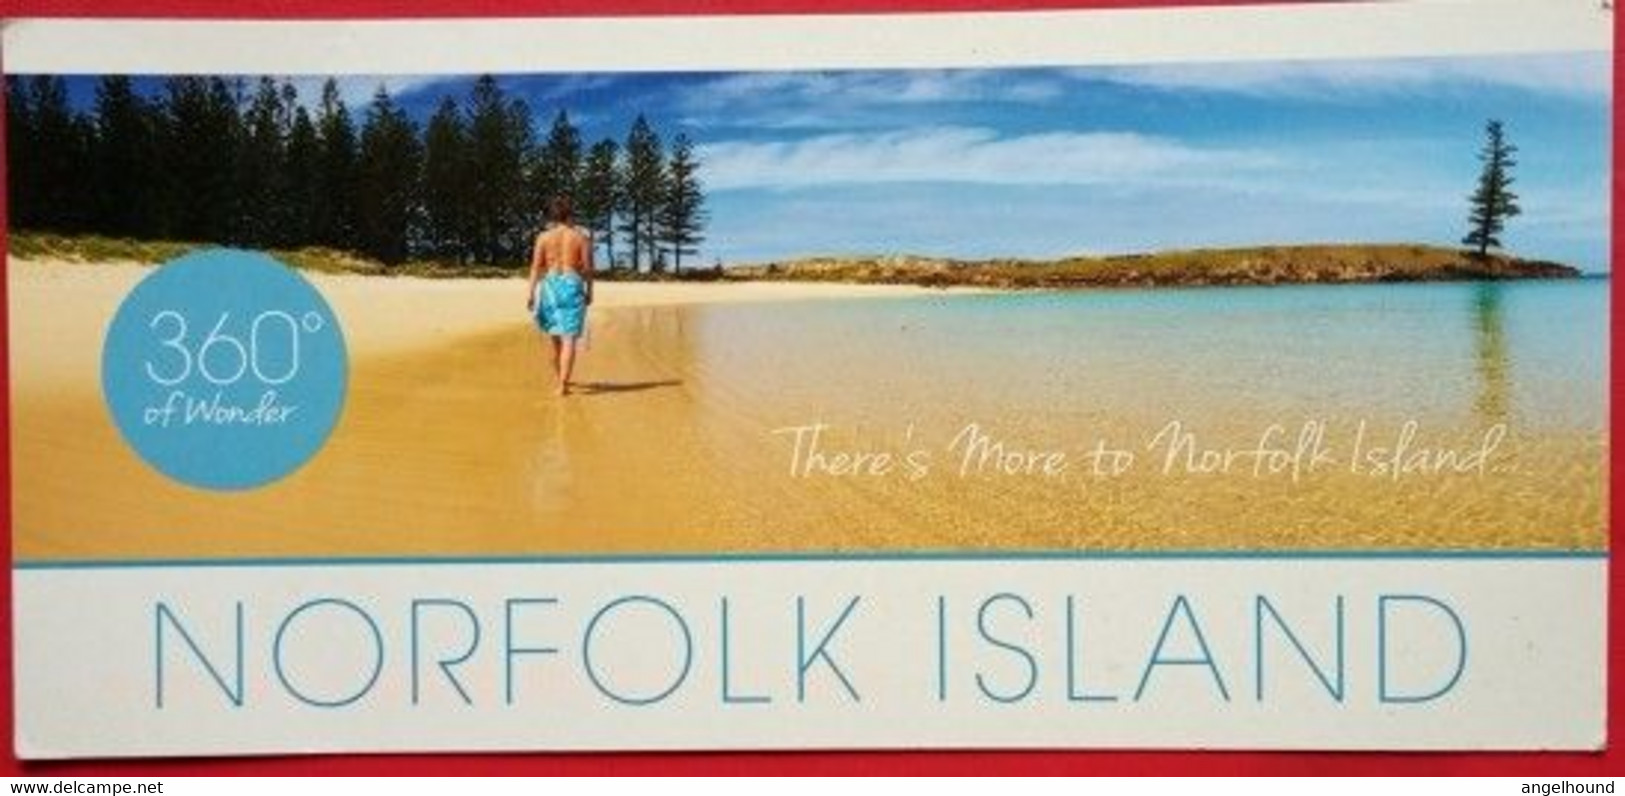 Norfolk Island Beach - Norfolk Island